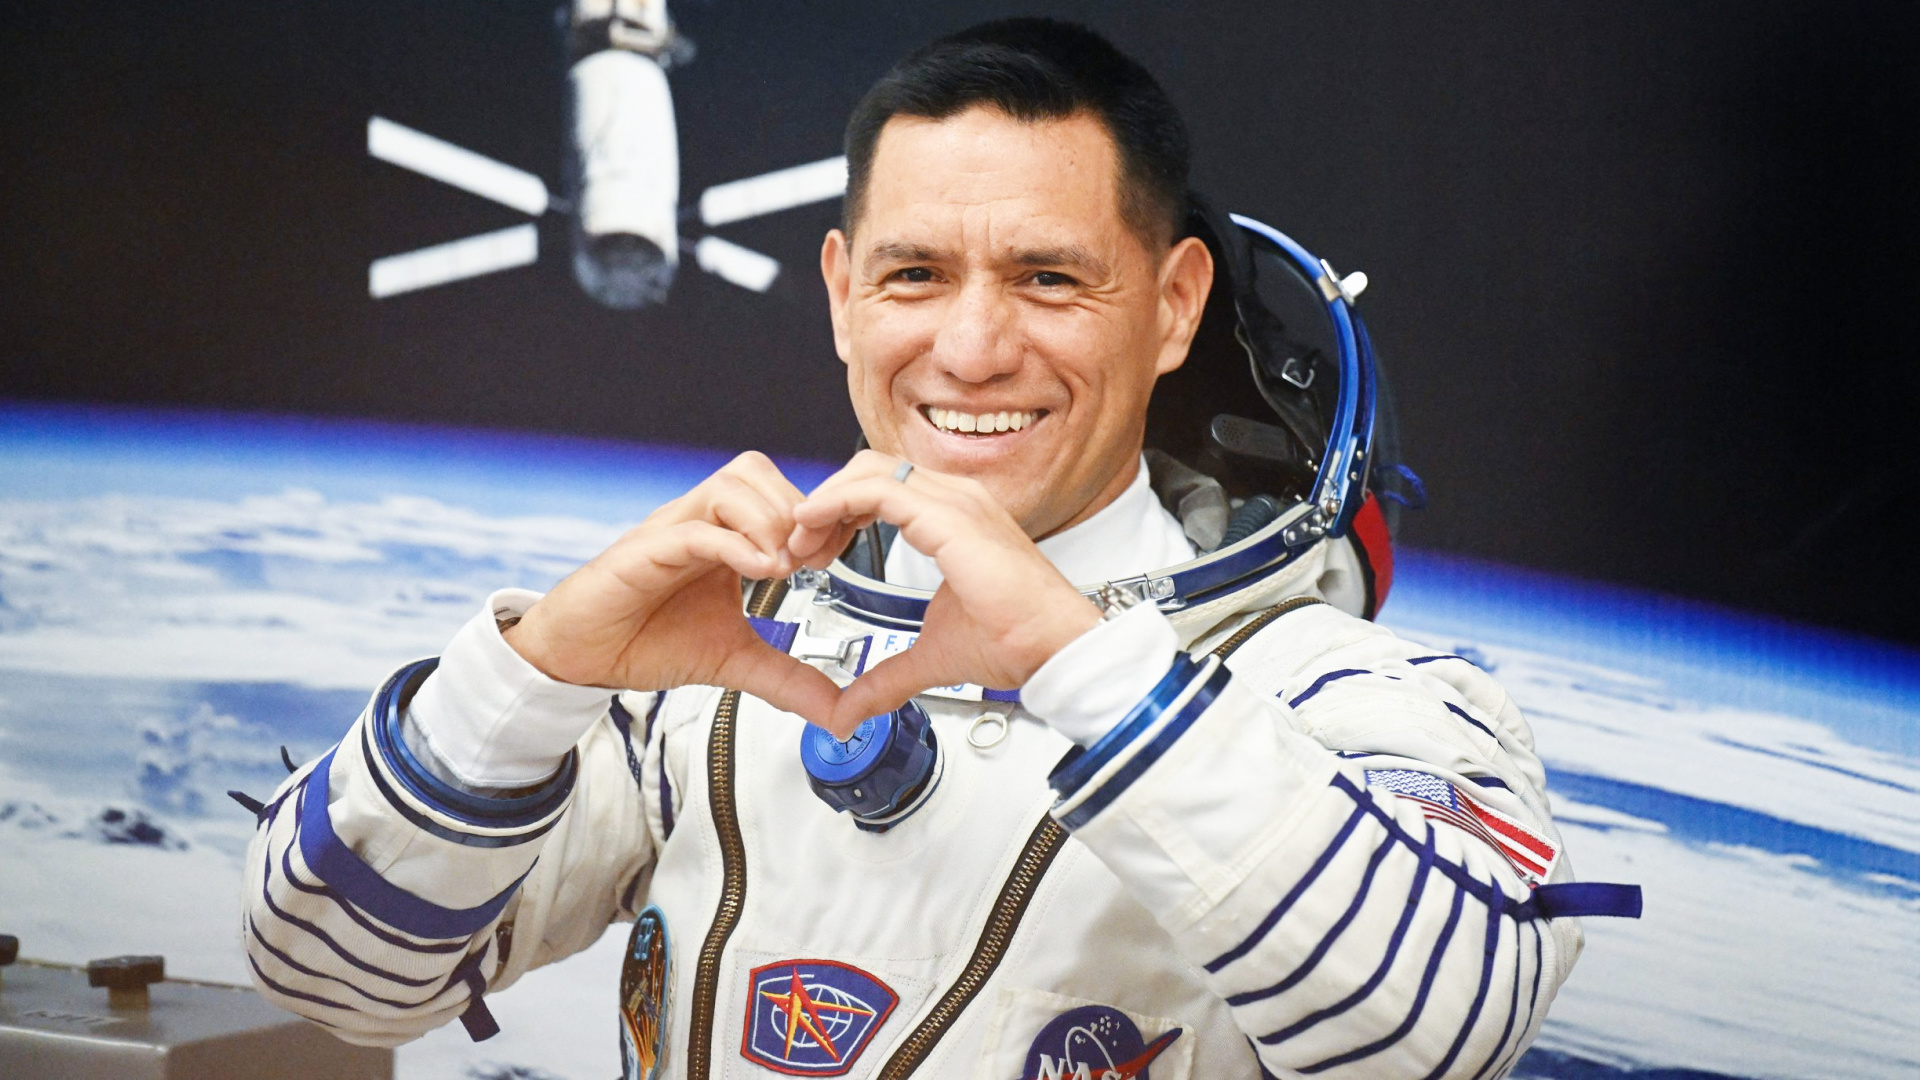 Astronaut Frank Rubio is eindelijk thuis na een jaar in de ruimte